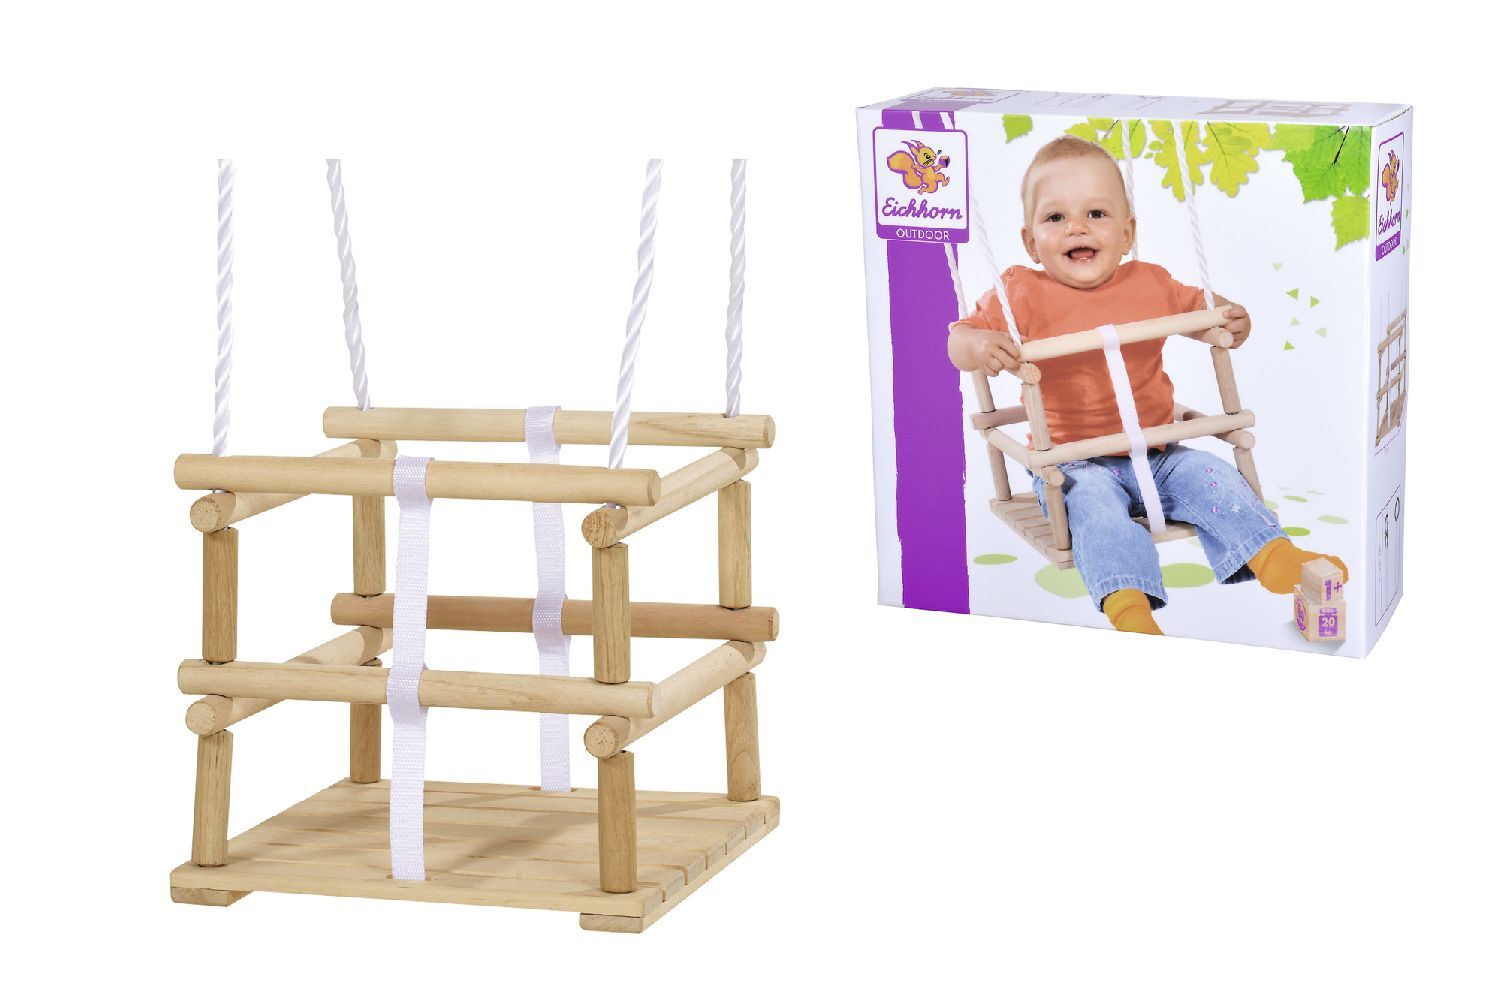 Eichhorn 100004402 - Kinder Gitterschaukel Outdoor Sitzfläche 30x30cm Holz/Kunststoff verstellbar